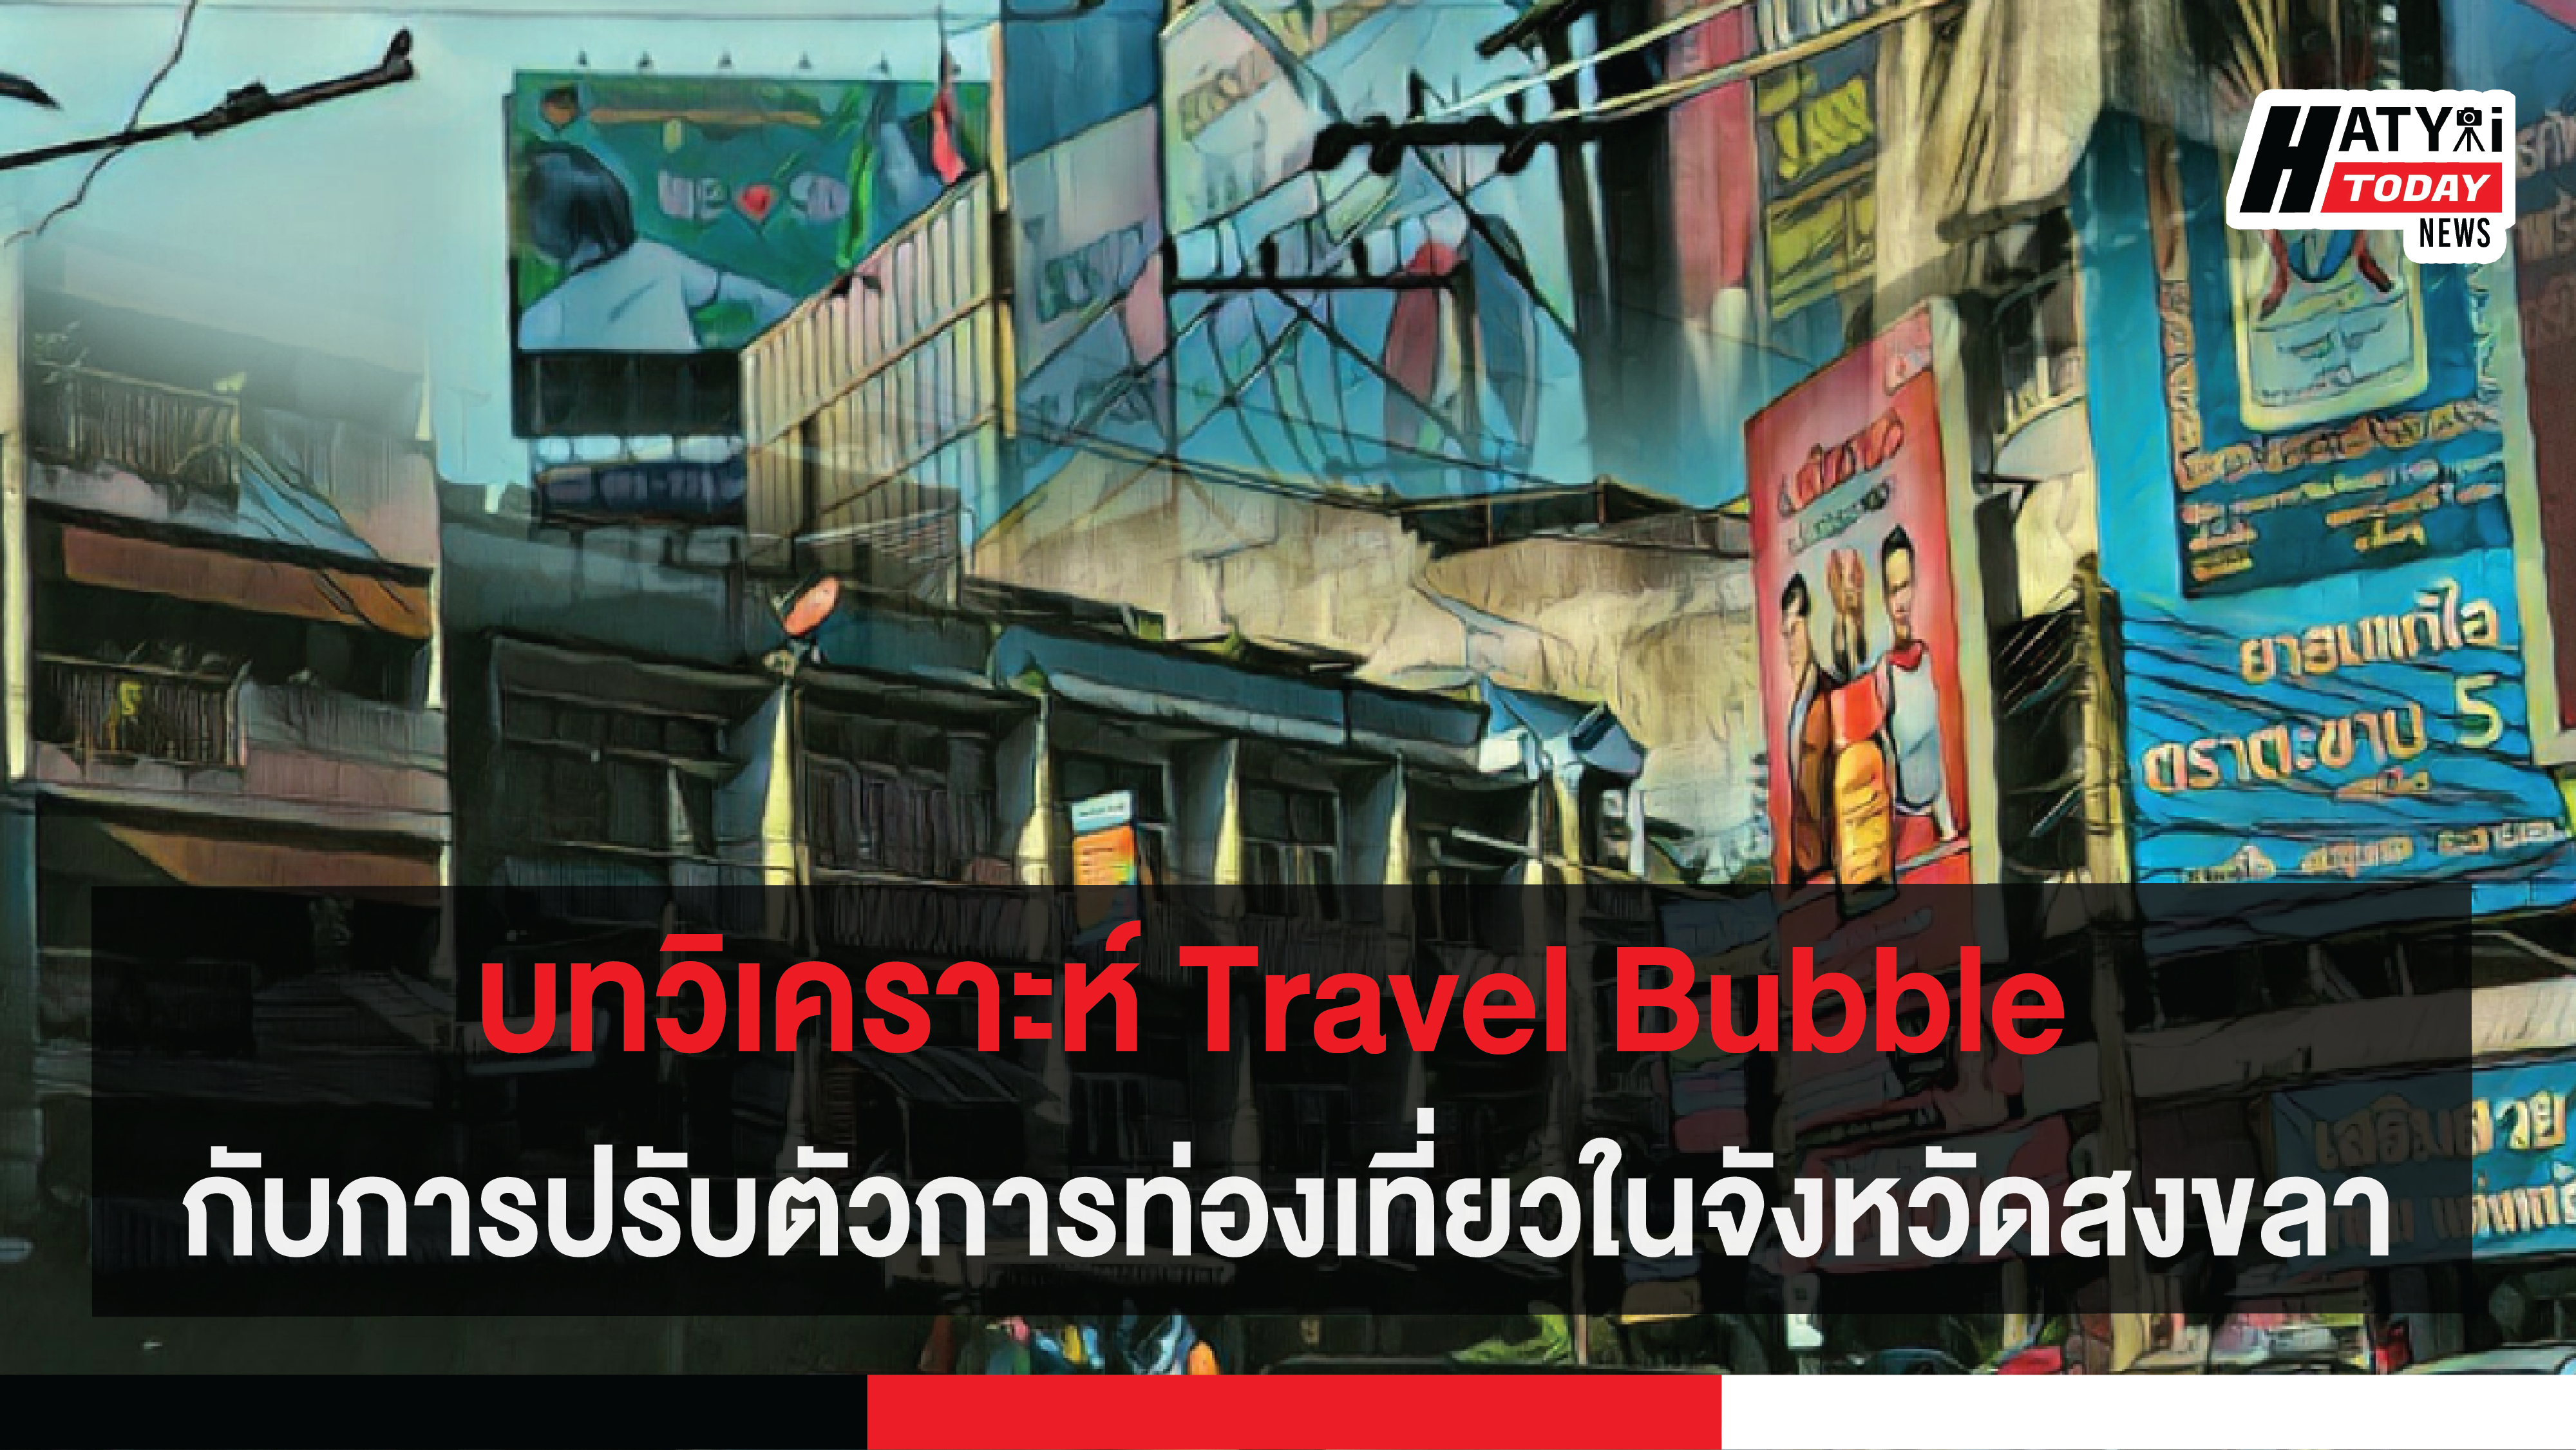 บทวิเคราะห์ Travel Bubble กับการปรับตัวการท่องเที่ยวในจังหวัดสงขลา